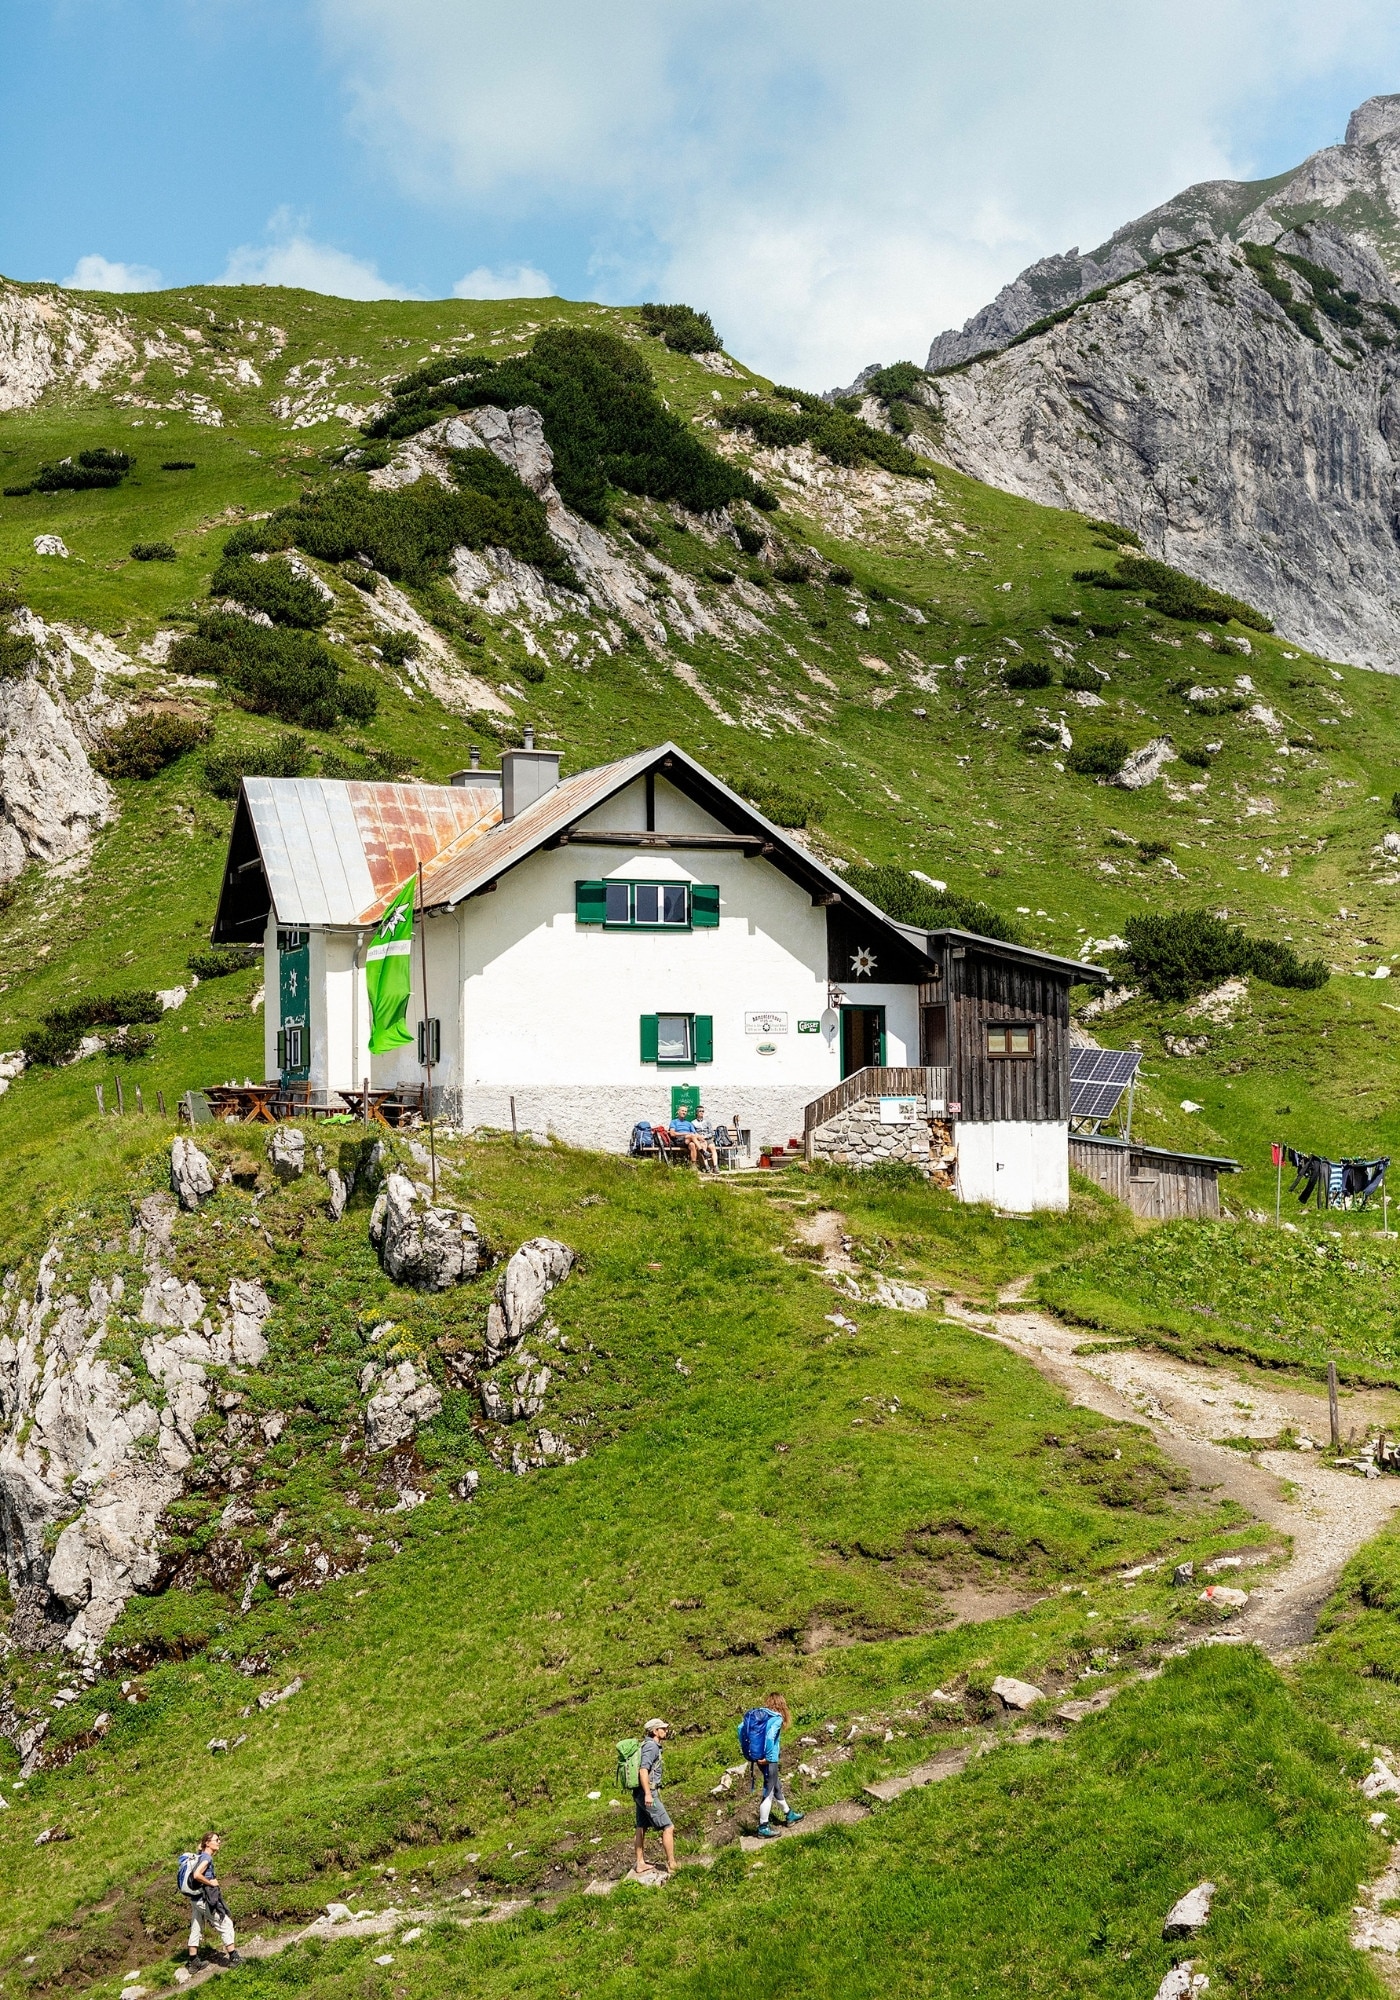 Eine Berghütte die Schutz und kulinarisches anbietet.